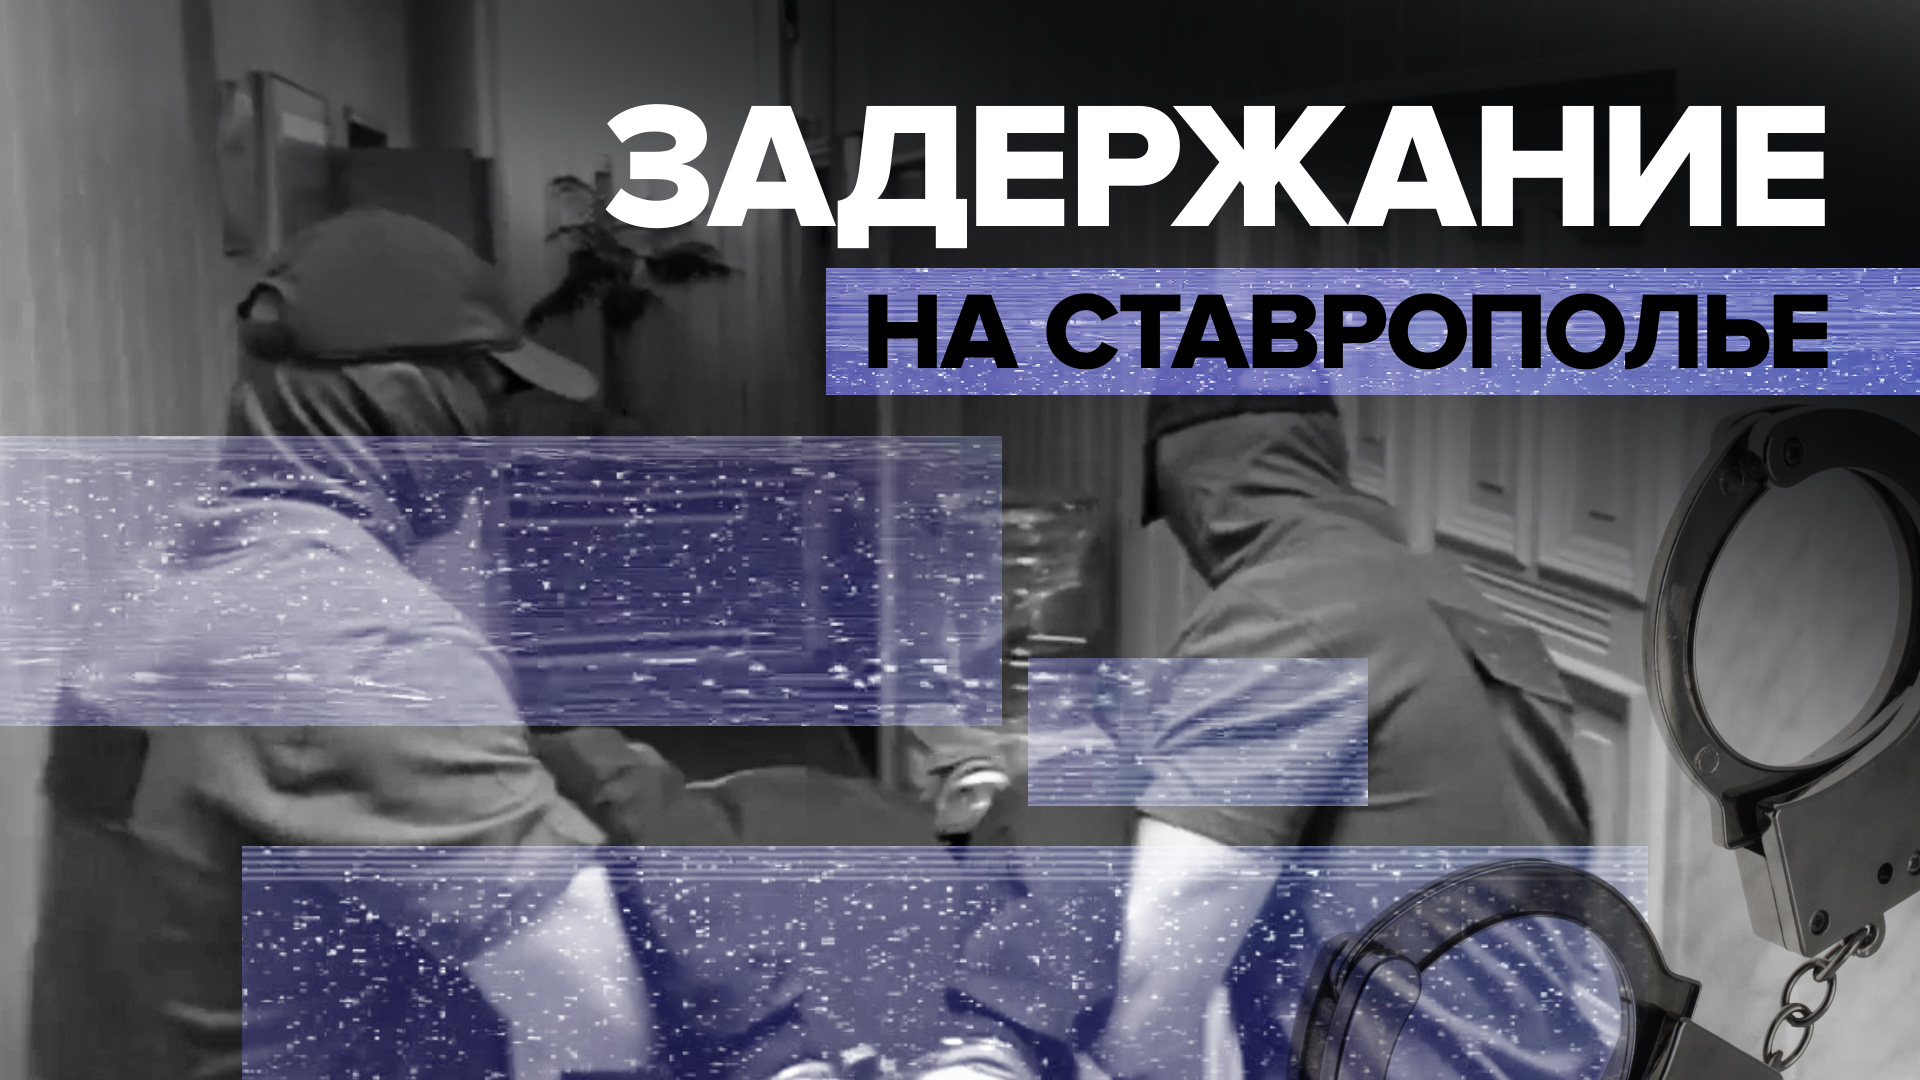 В Ставропольском крае задержали сторонника «Правого сектора», который планировал поджоги — видео